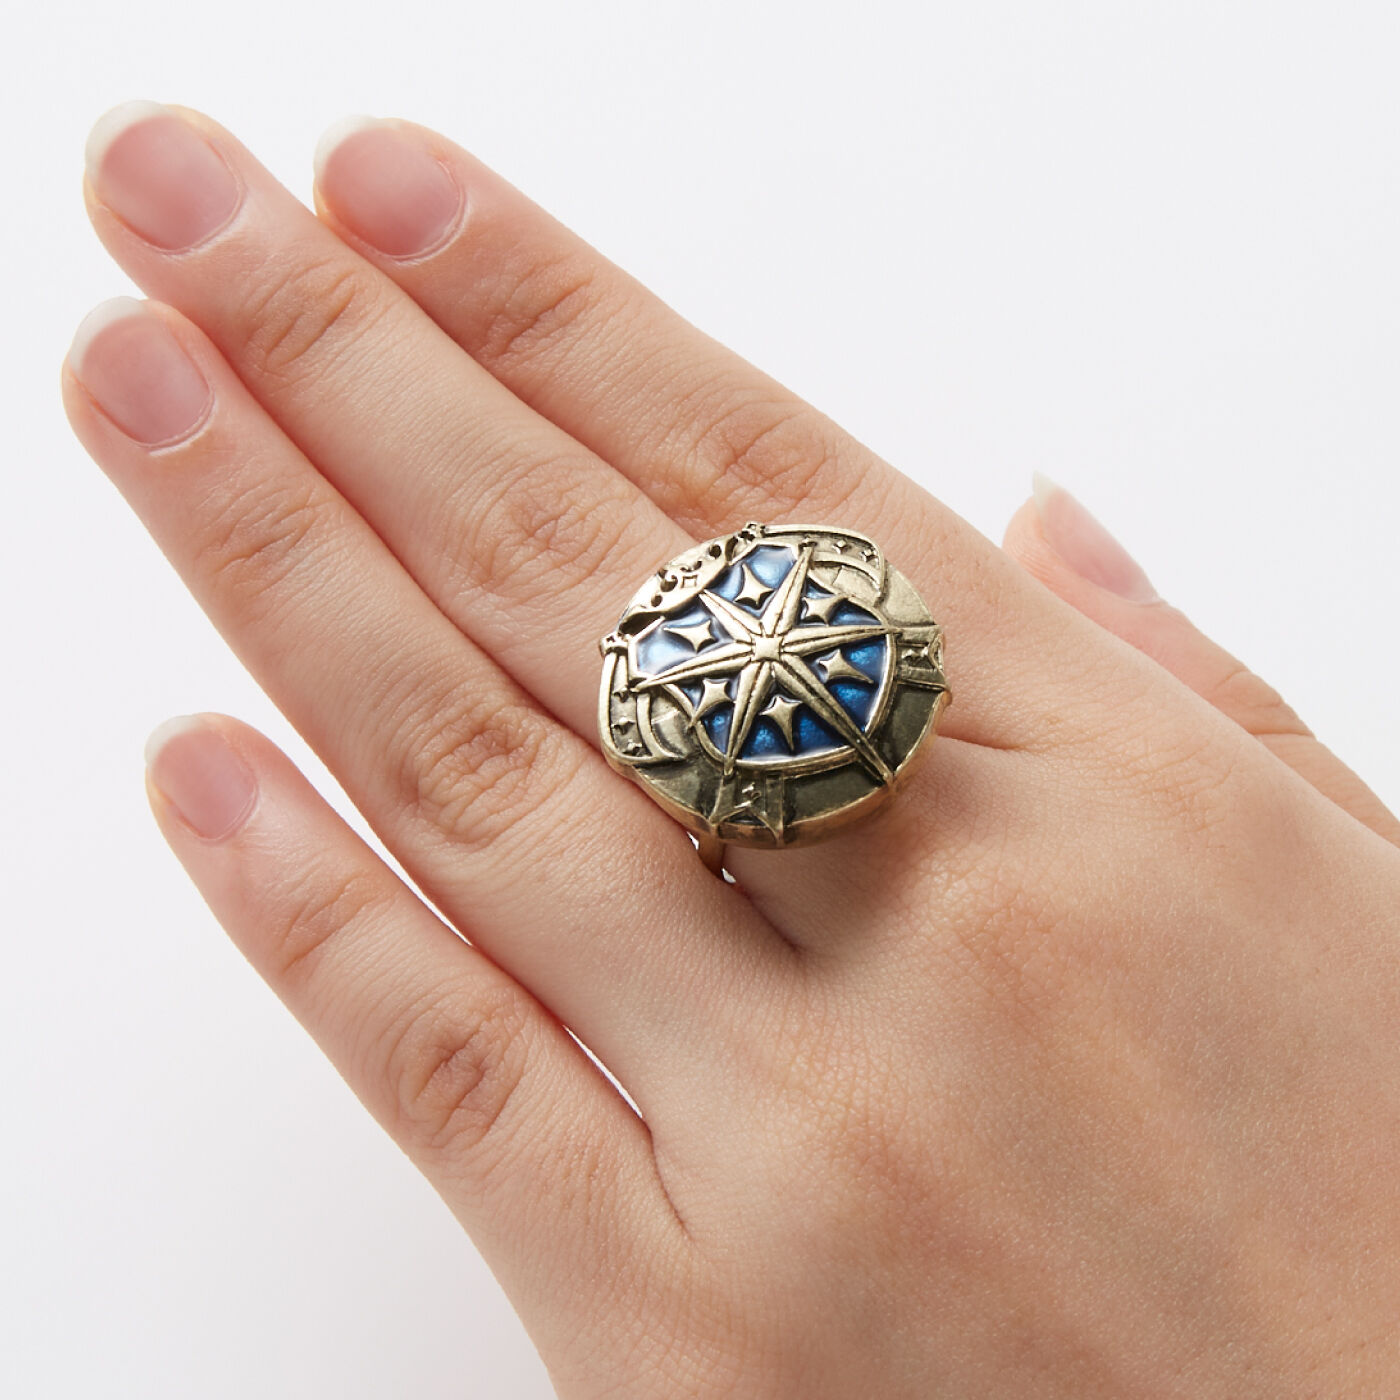 魔法部|魔法部×魔法使いの約束　国章ボタンカバー〈中央の国〉|指輪に付ければ、存在感のある大きめのモチーフリング風に。※指輪の形状によっては付けられない場合があります。